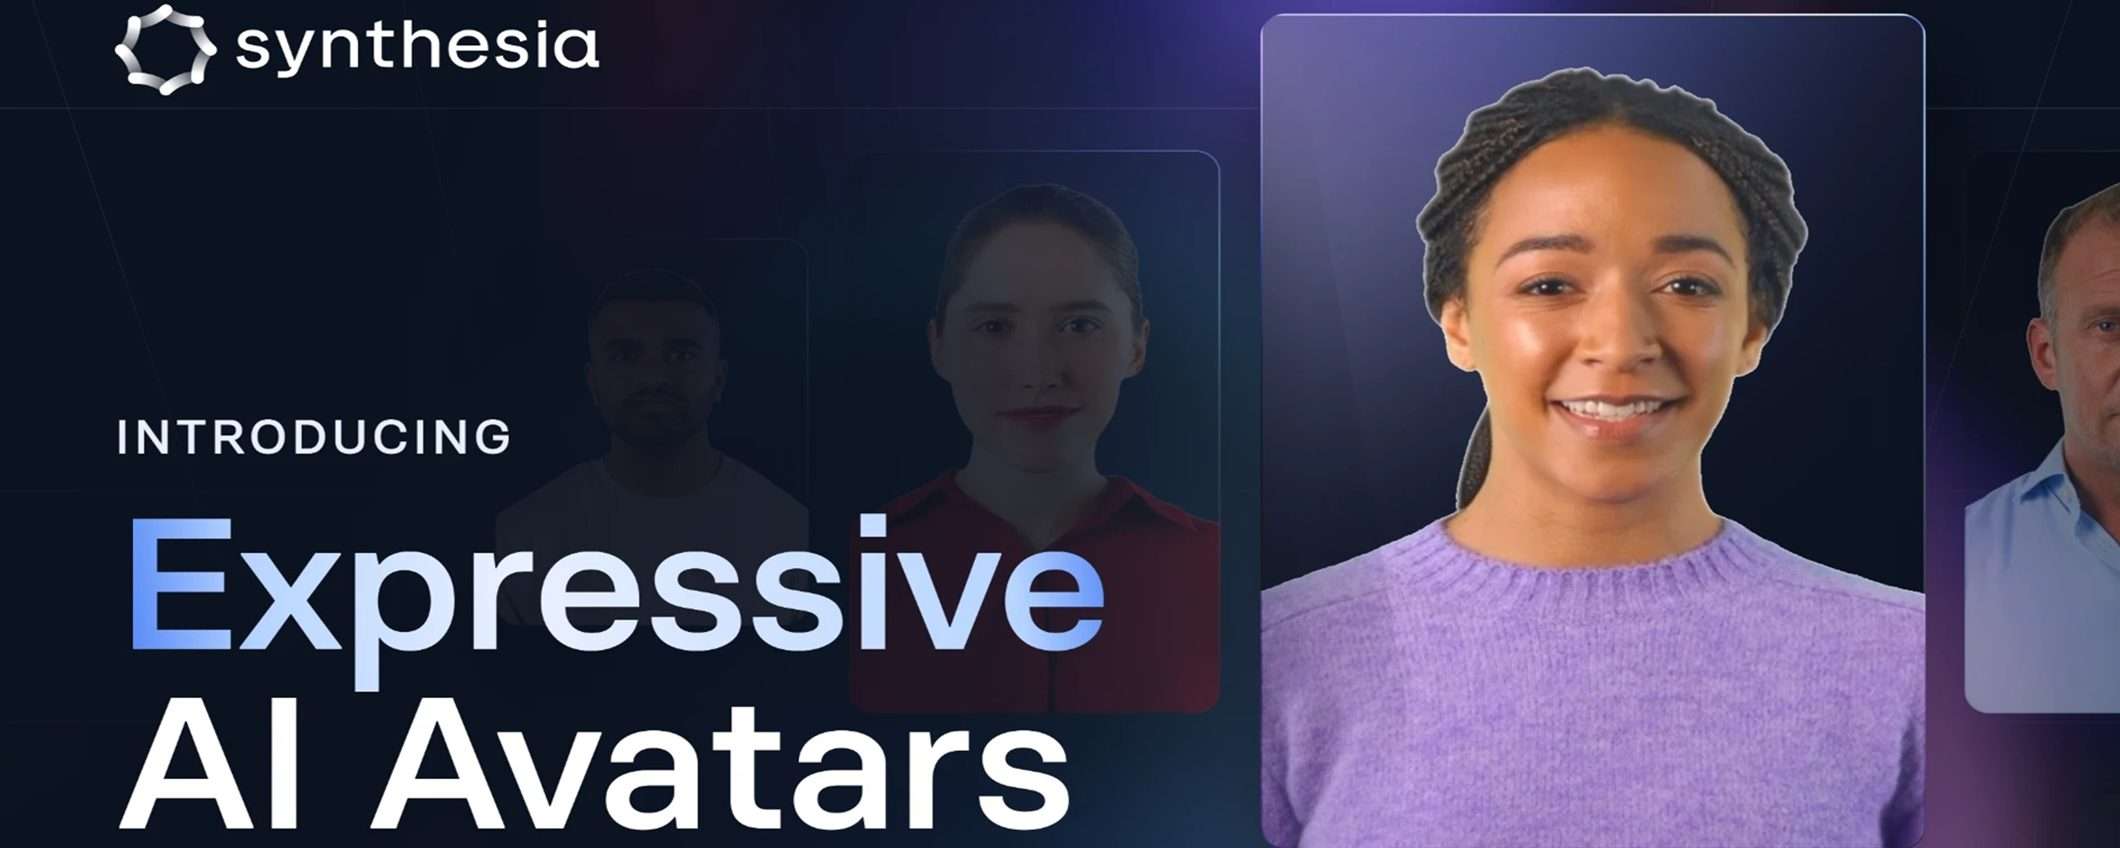 Synthesia lancia gli avatar espressivi per video AI più naturali